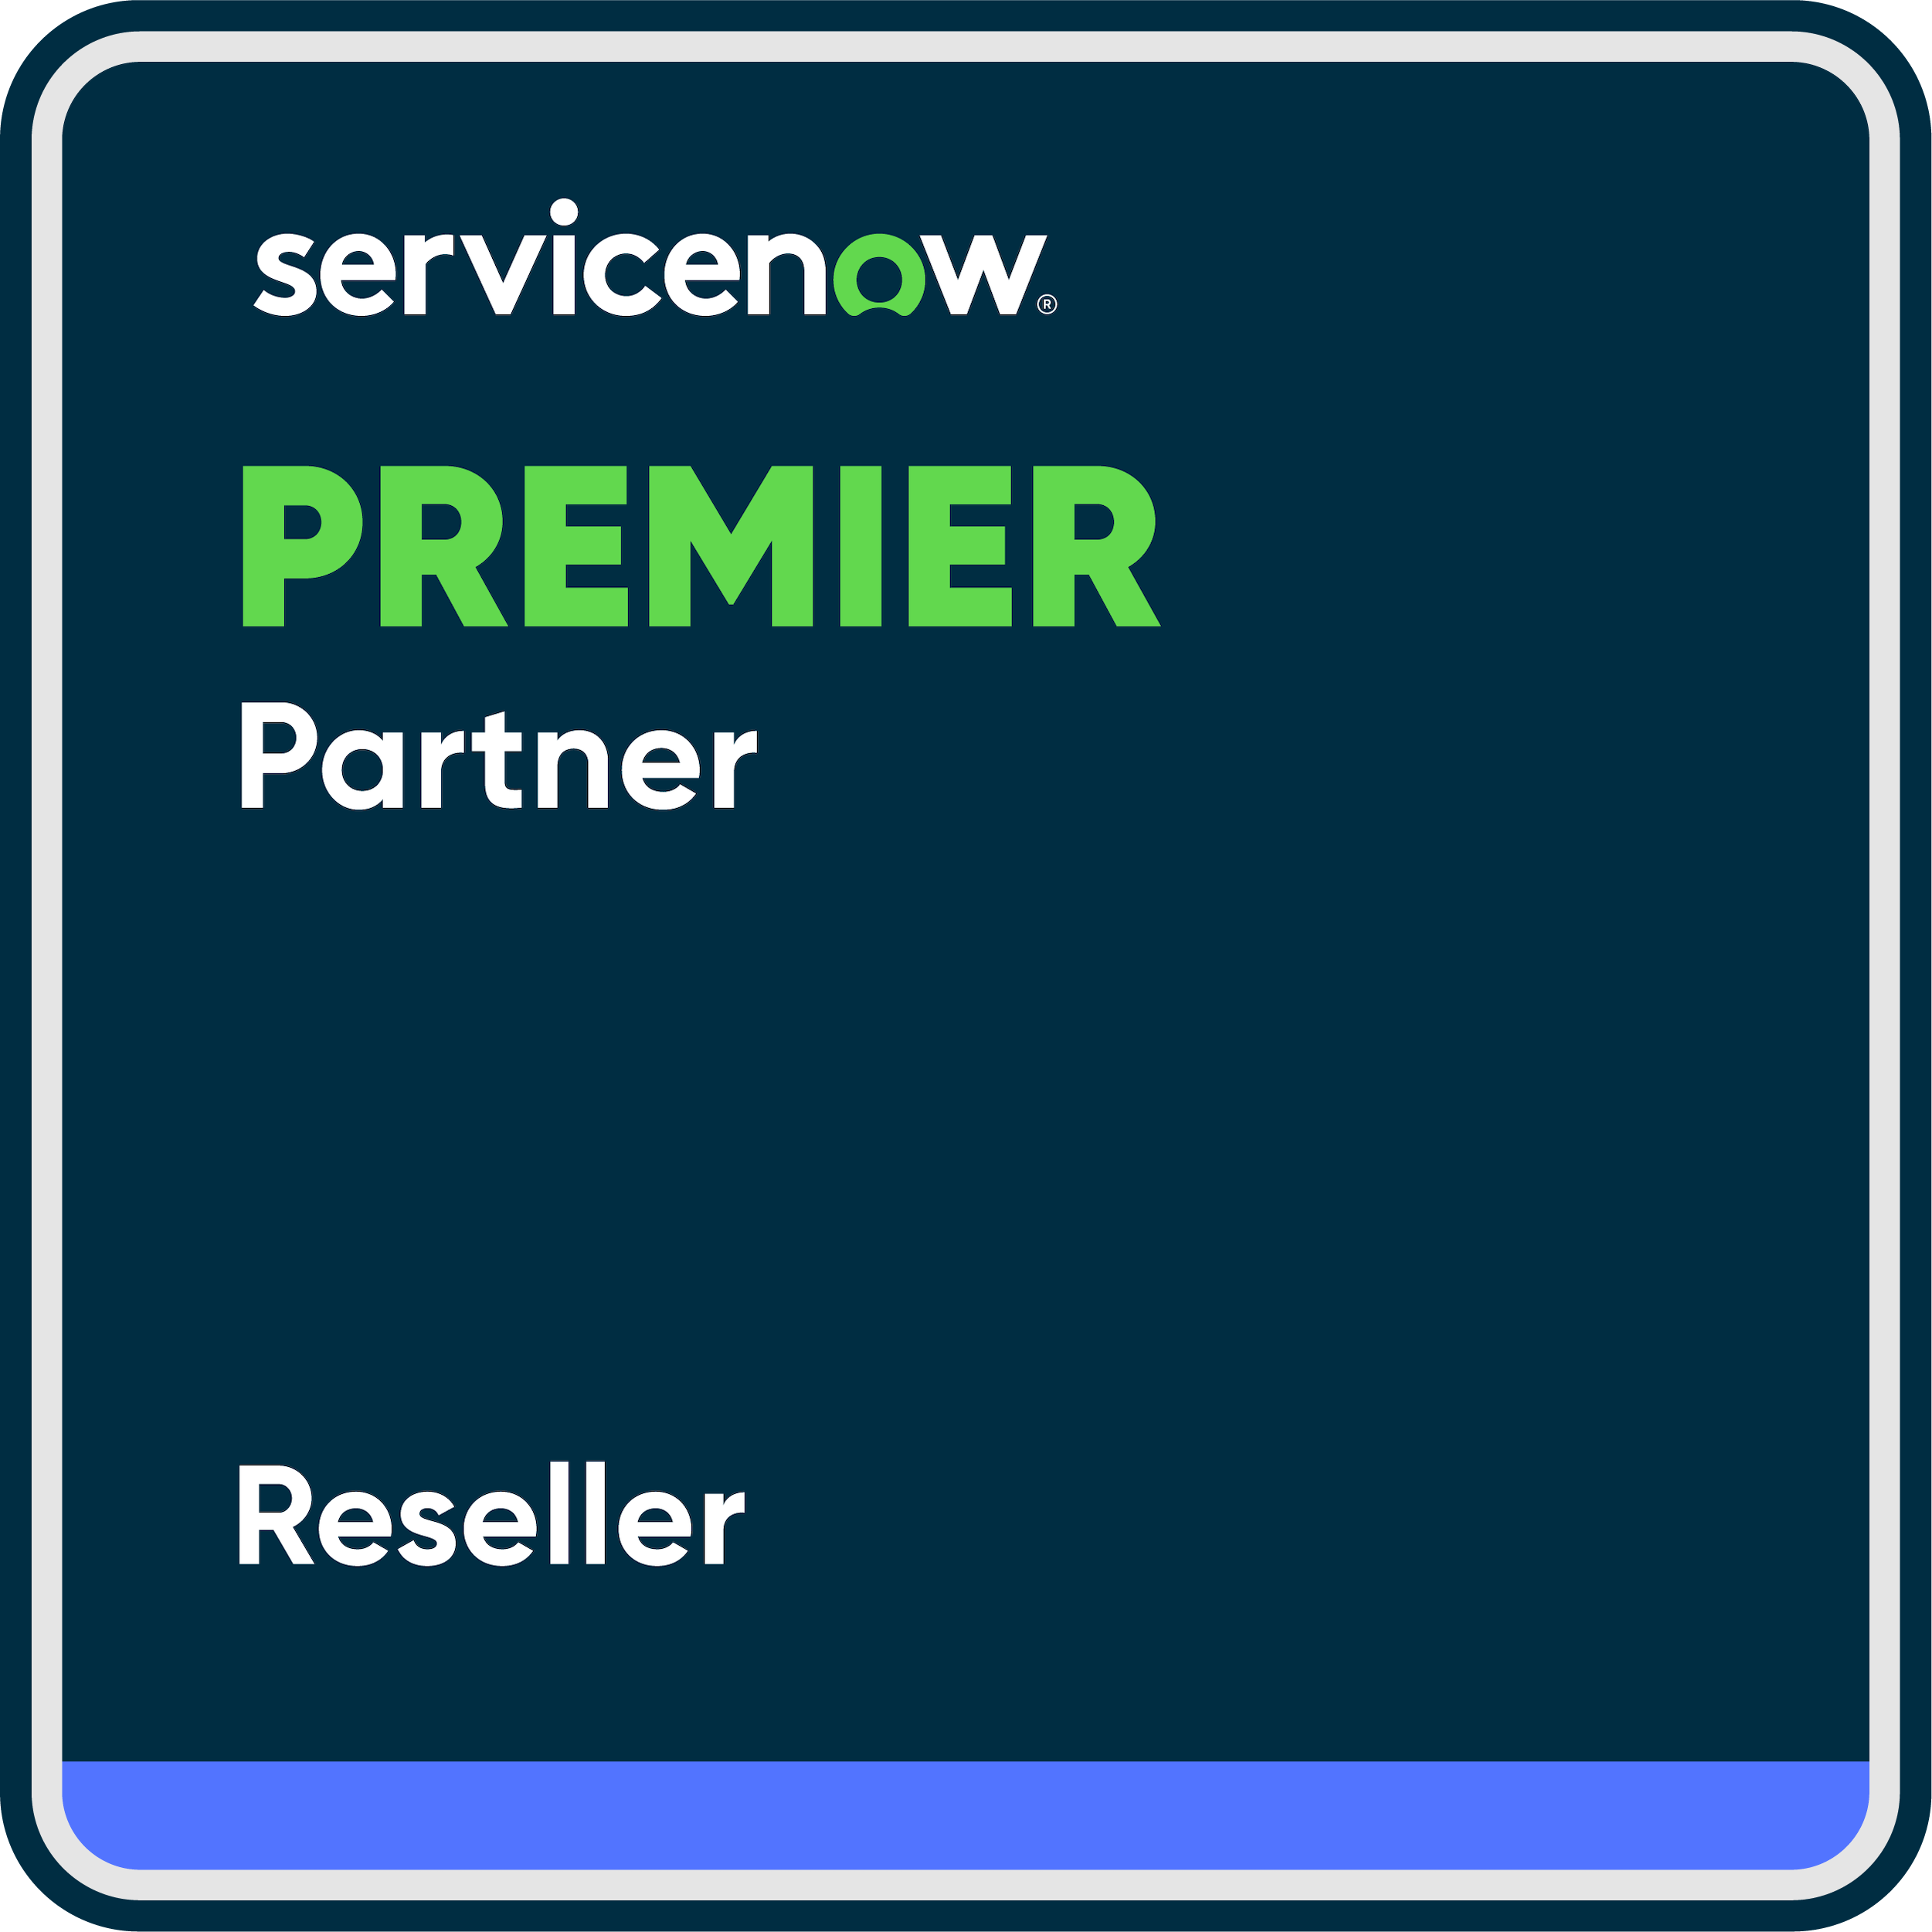 servicenow premier partner reseller